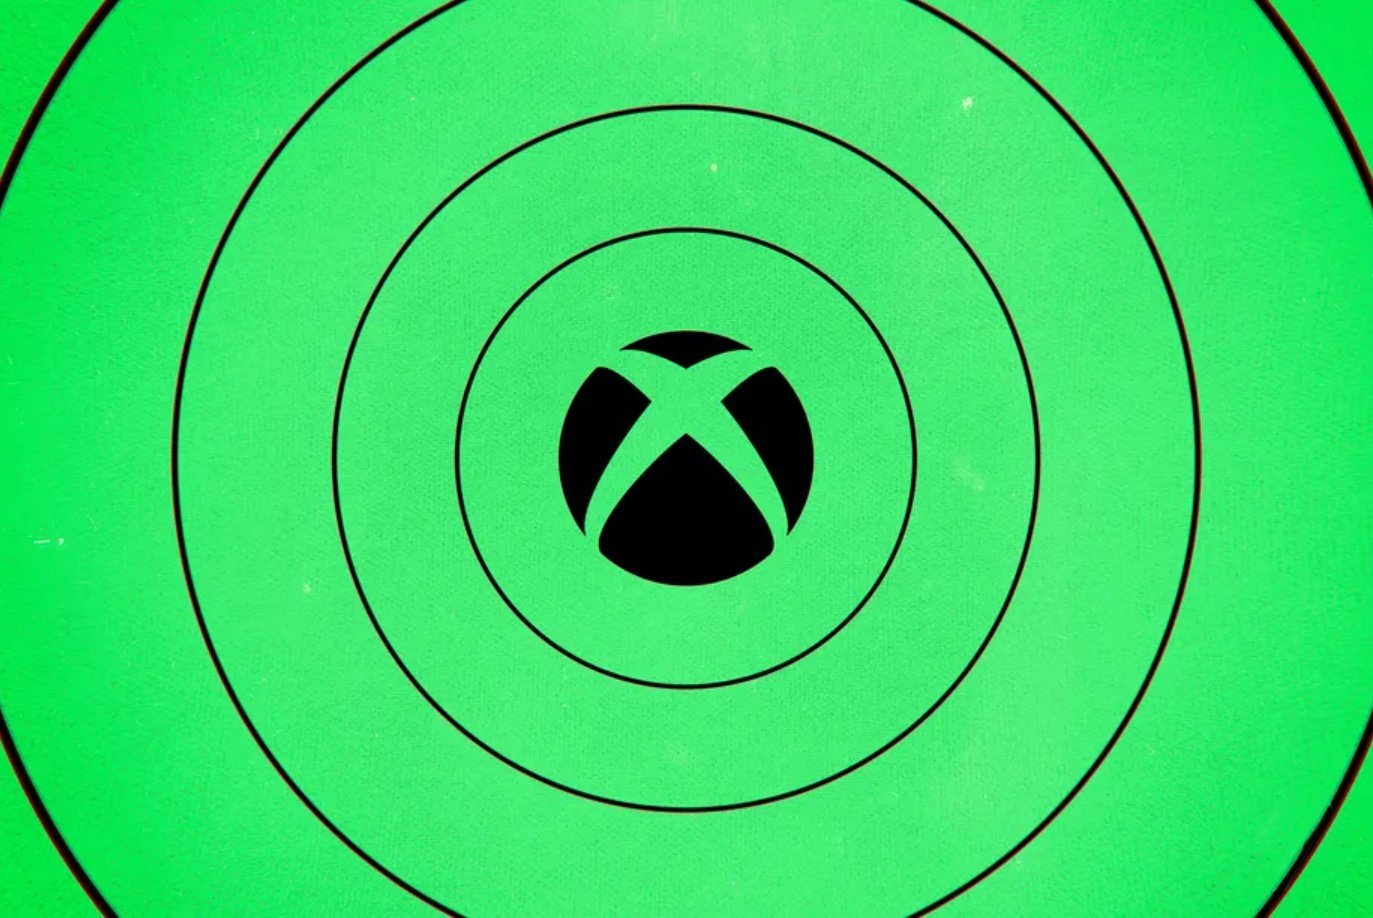 Τα δωρεάν multiplayer παιχνίδια του Xbox δεν θα απαιτούν πλέον συνδρομή Xbox Live Gold